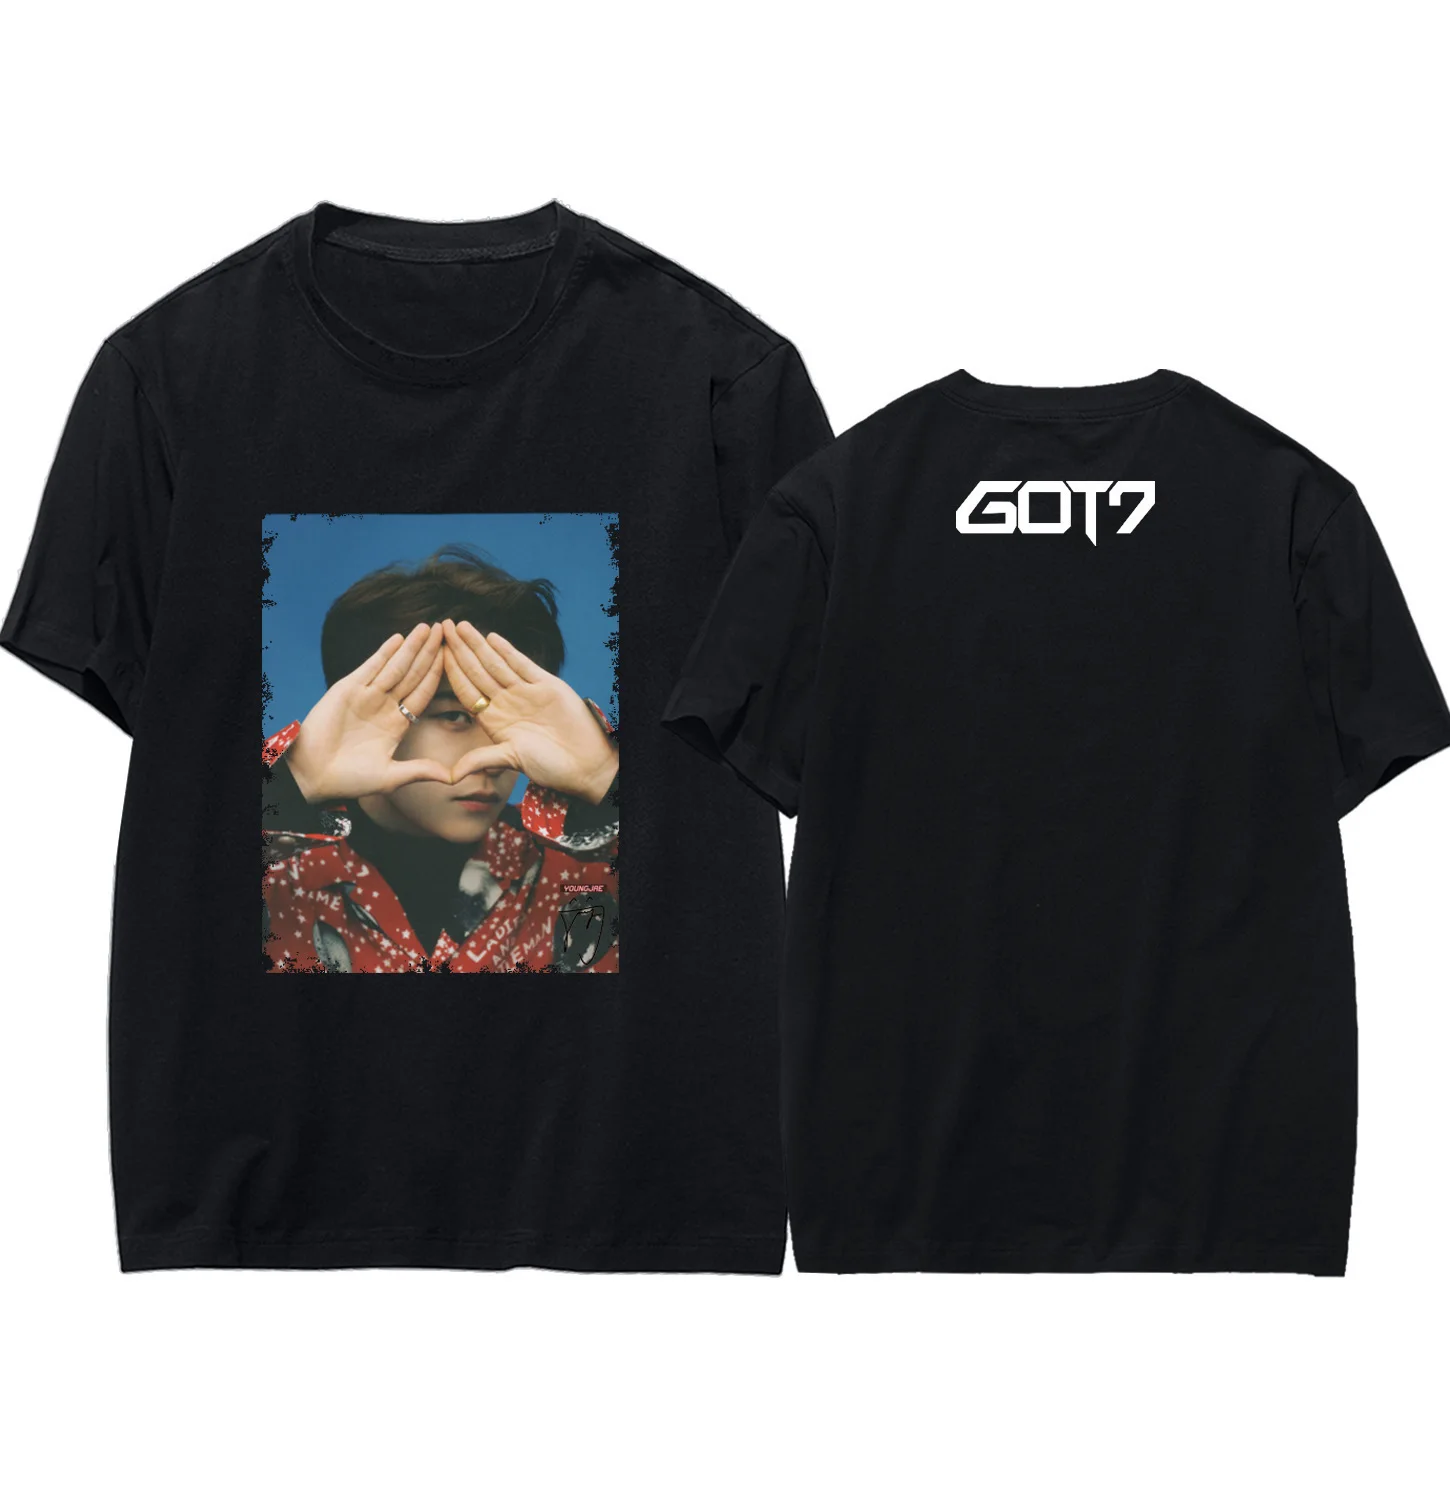 Got7 All Members T-Shirt (Official)